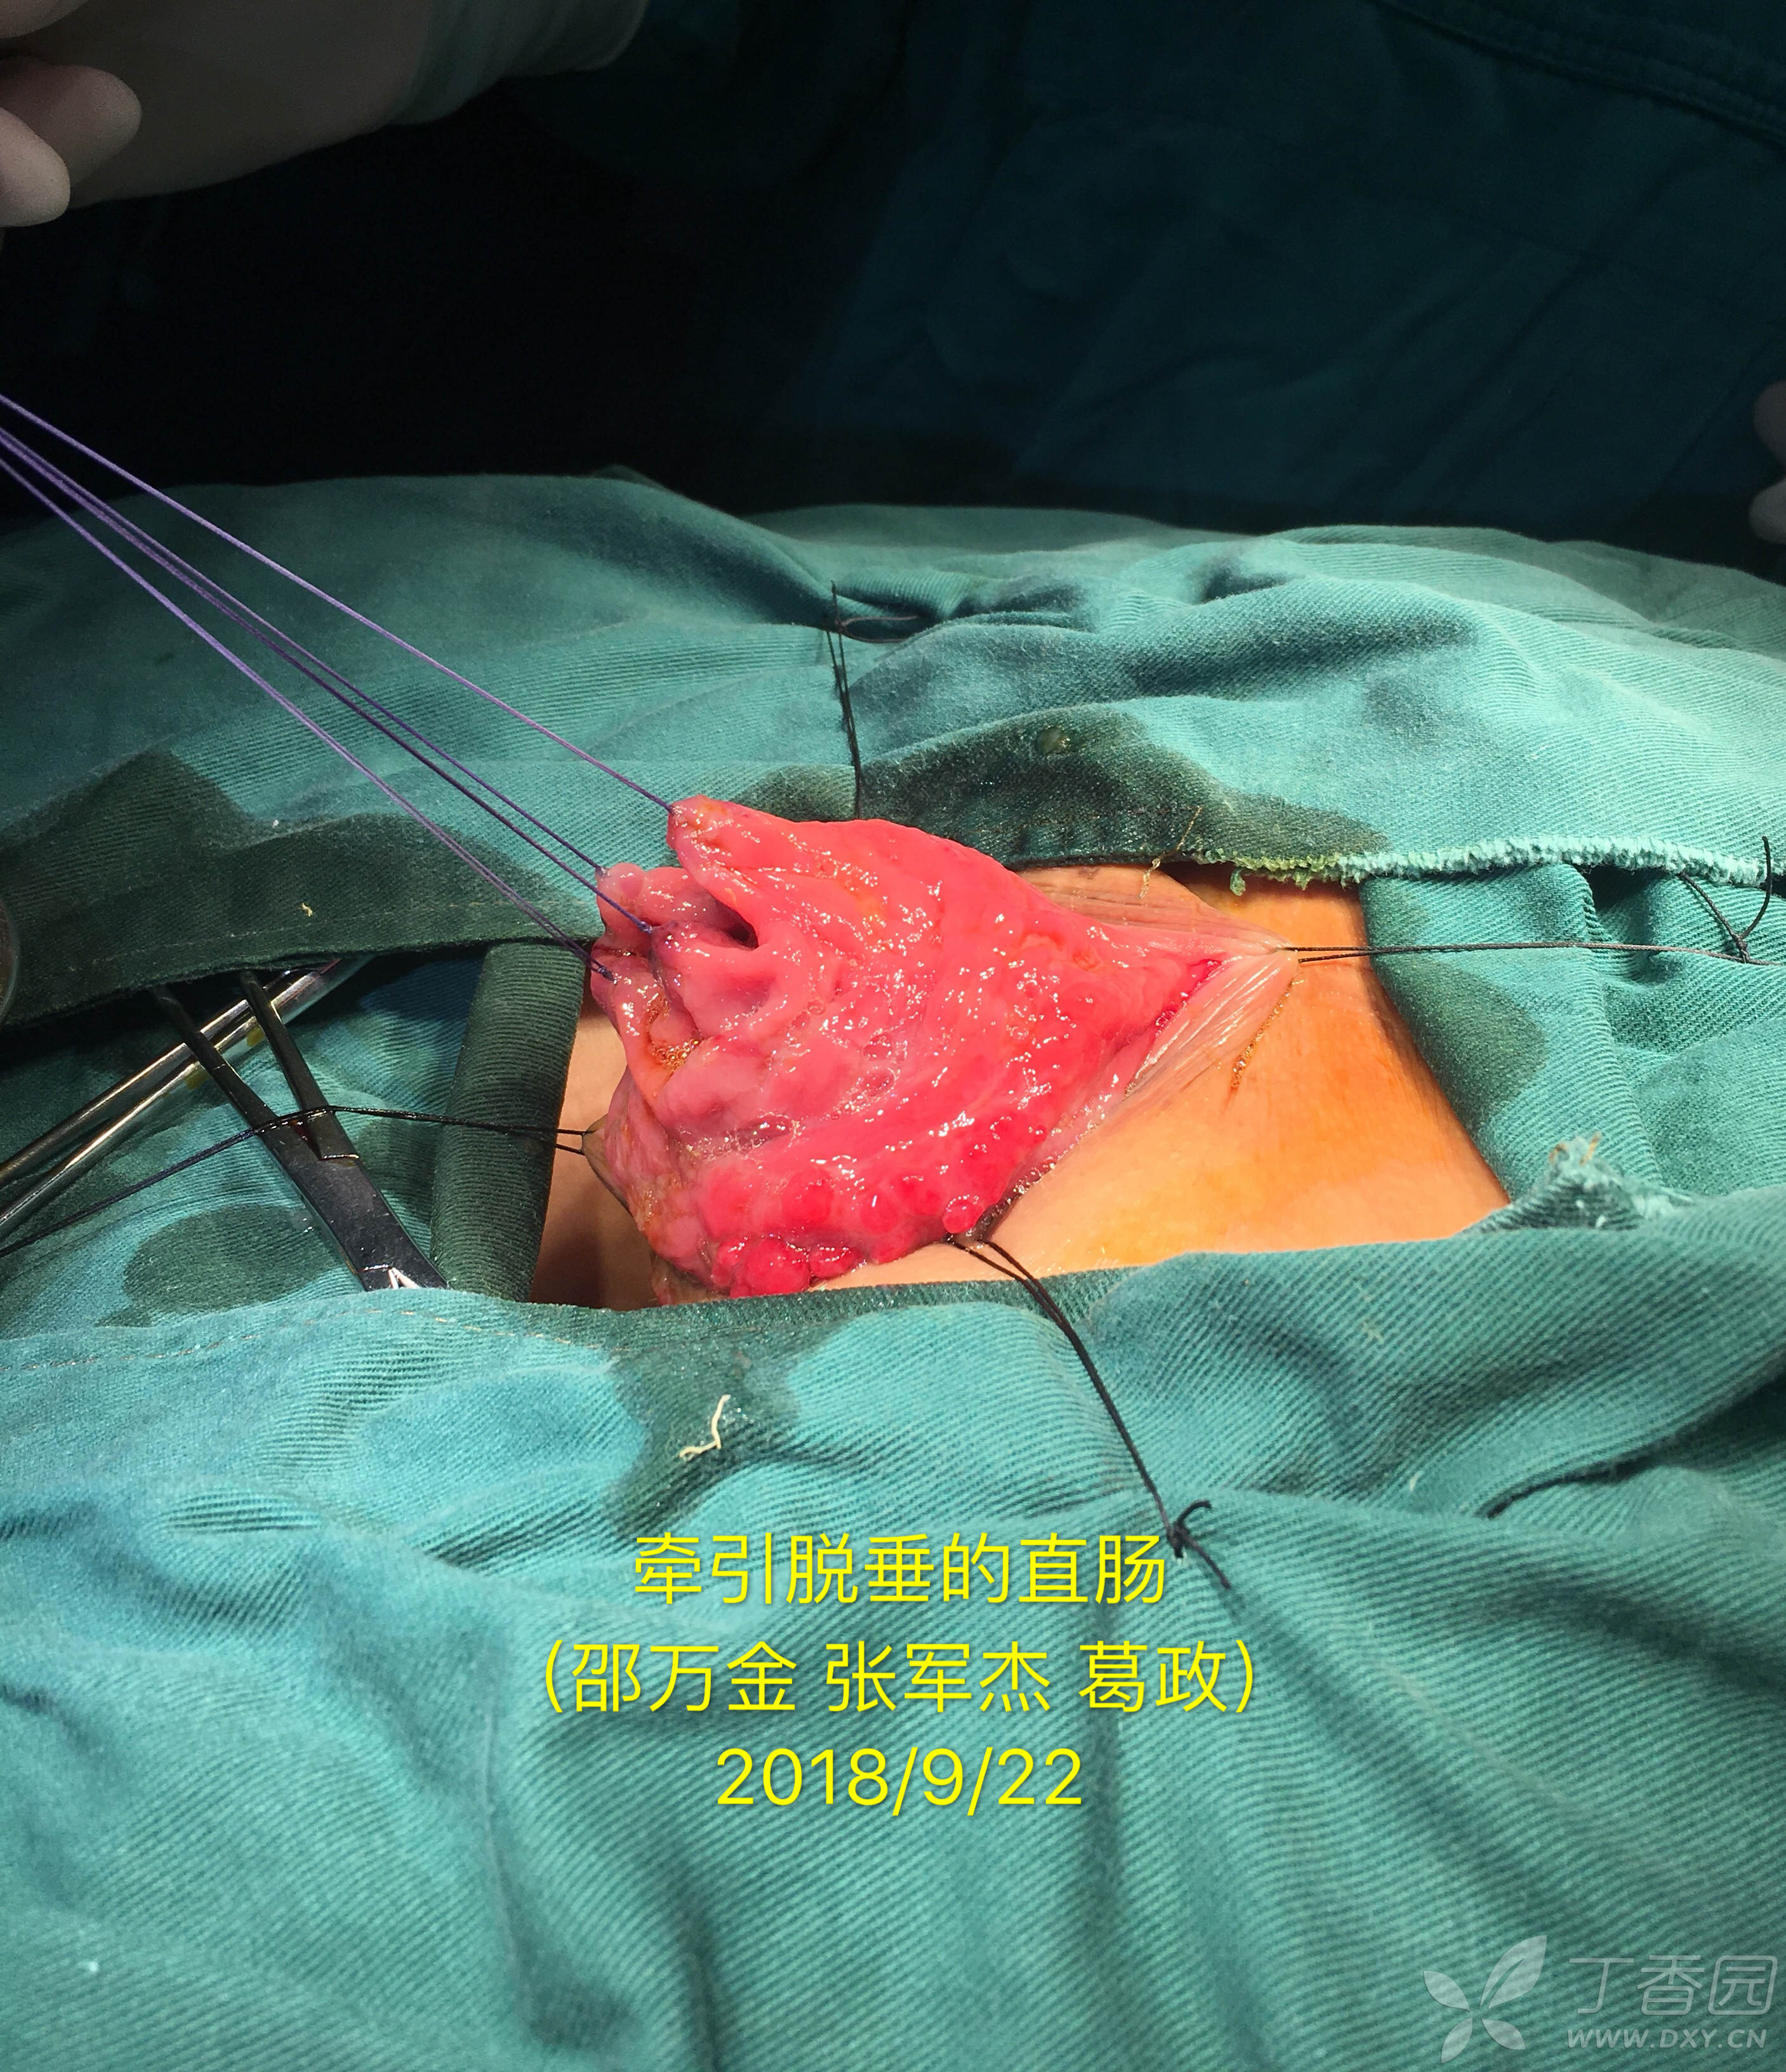 直肠脱垂delorme手术演示病例分享(邵万金)